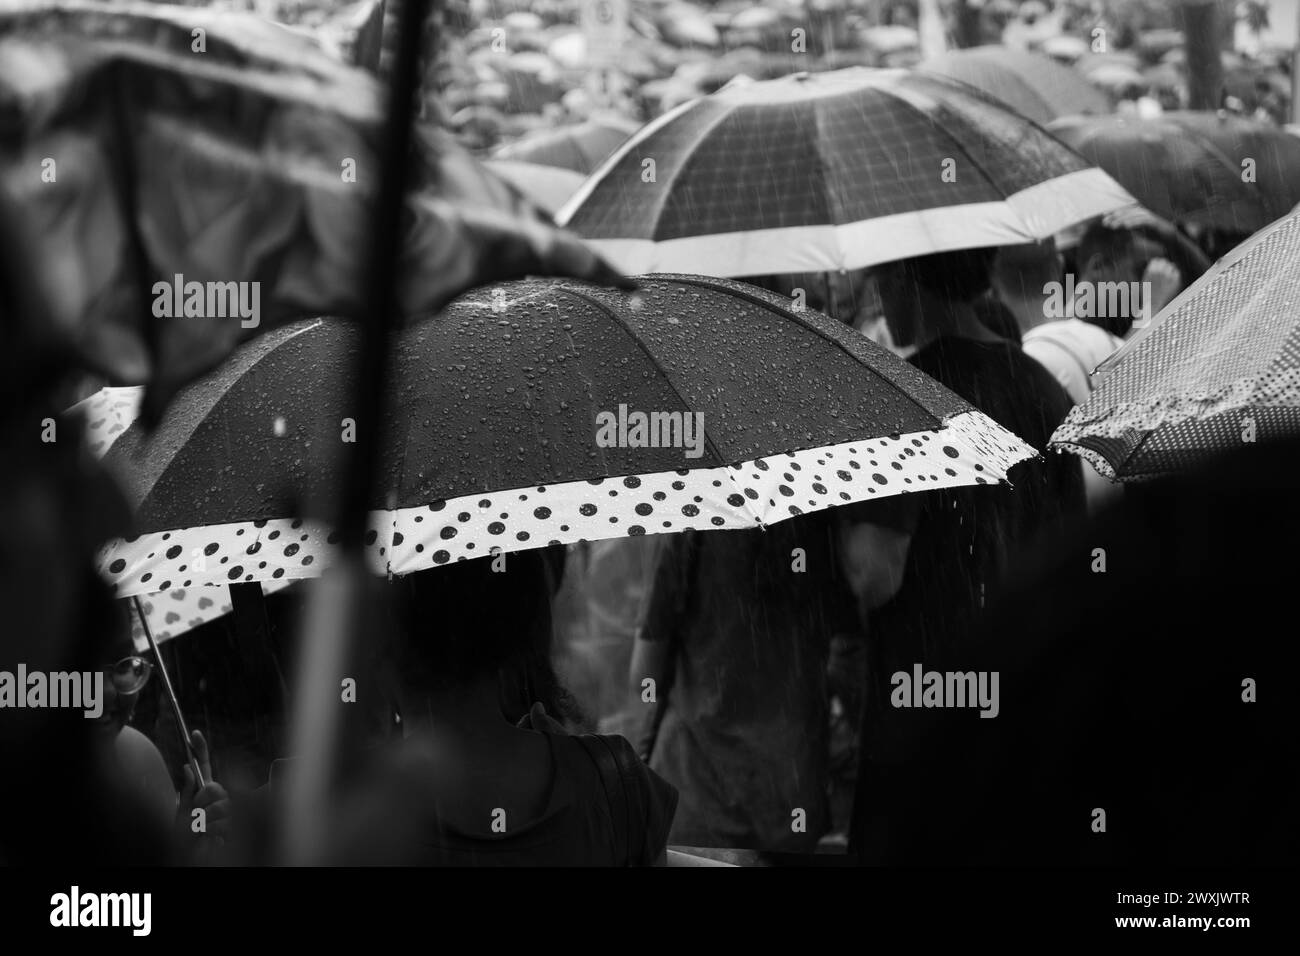 Salvador, Bahia, Brasilien - 15. Mai 2019: Hunderte von Studenten werden während eines Protestes für Bildung in der Stadt Salvador mit Regenschirmen gesichtet Stockfoto